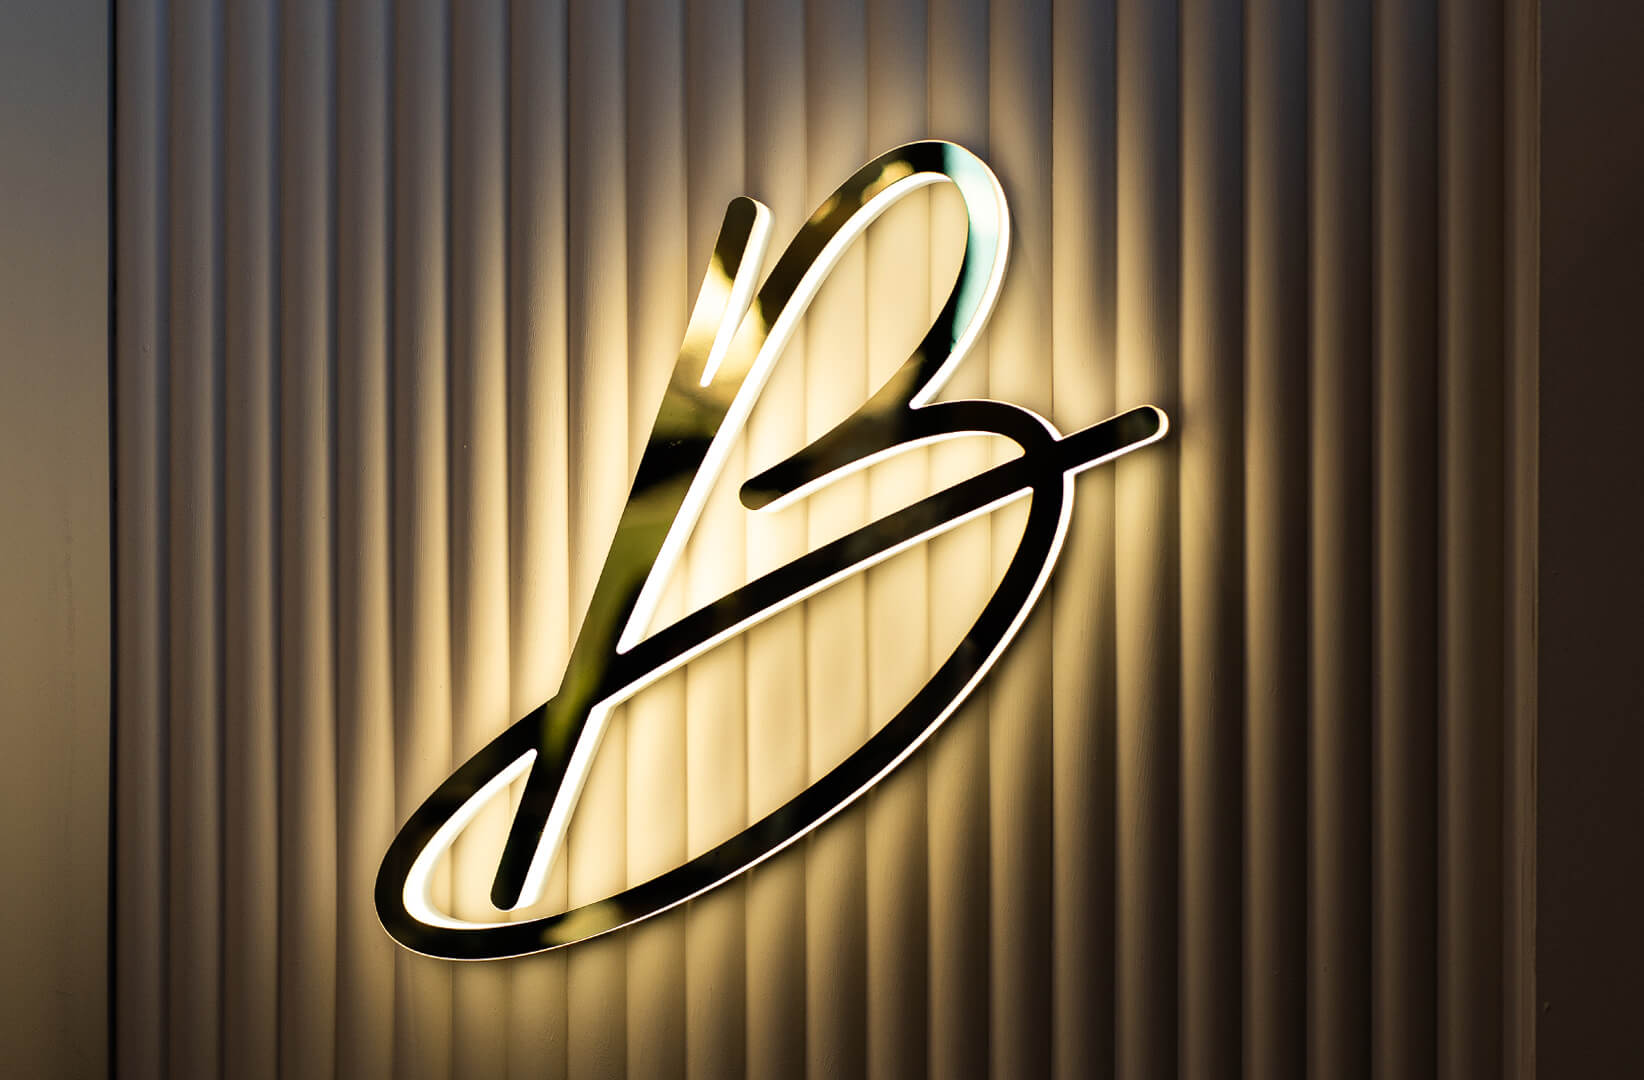 Blushington Buchstabe B - Buchstabe B mit Blushington-Logo in Gold, beleuchtet entlang der LED-Kontur